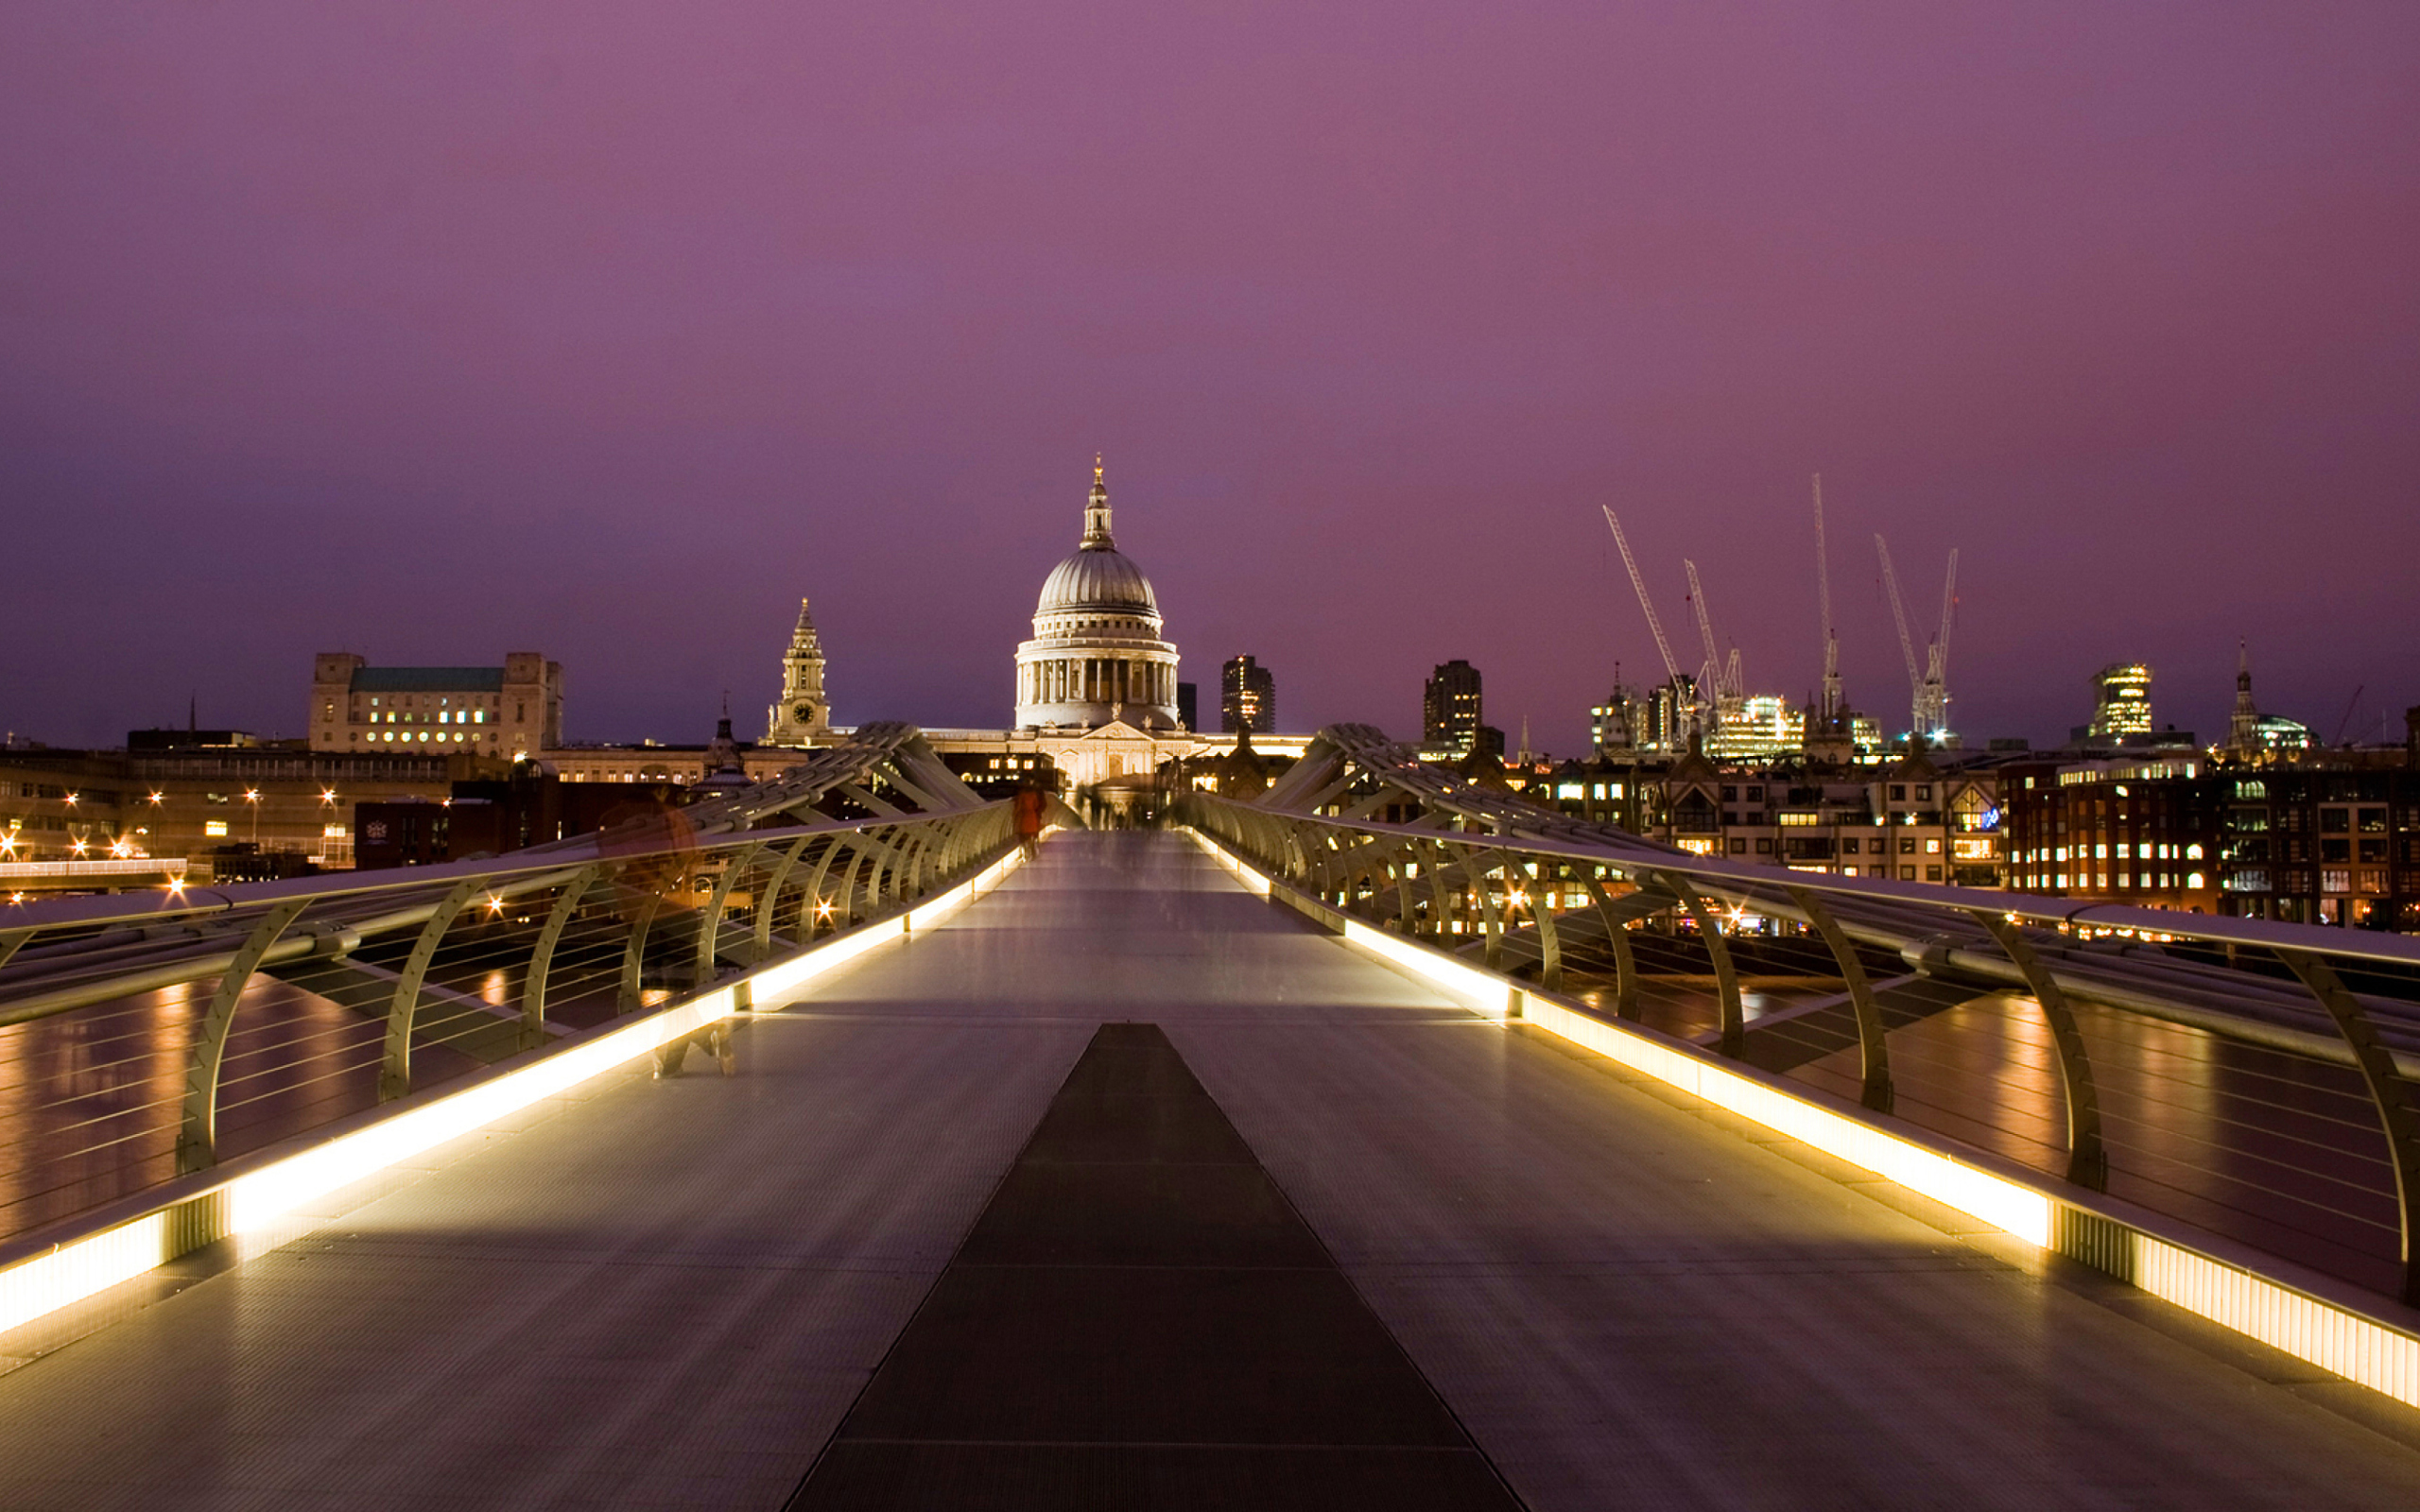 Das Millennium Futuristic Bridge in London Wallpaper 2560x1600